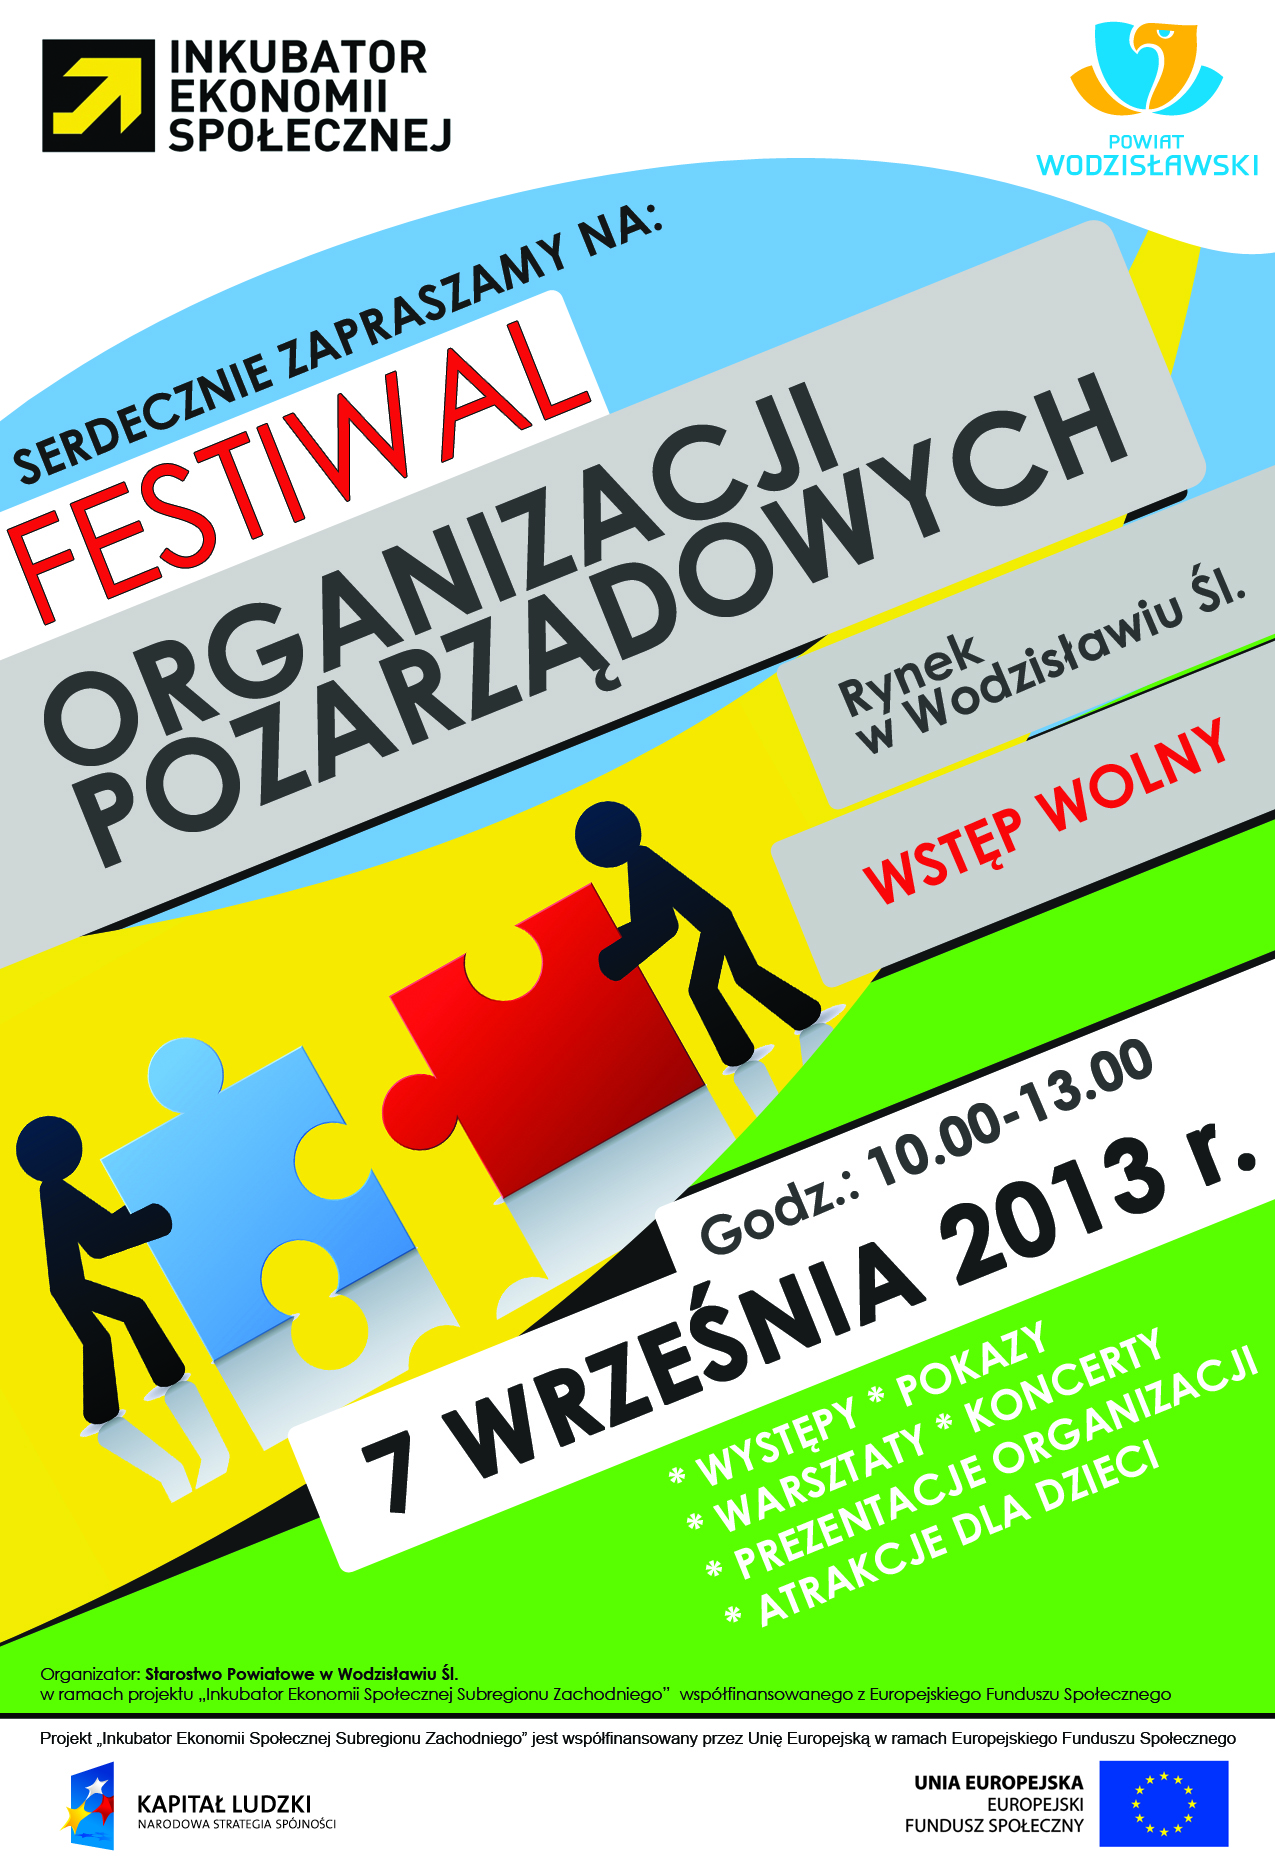 Festiwal Organizacji Pozarządowych - 7.09.2013 - Rynek Wodzisław Godz 10